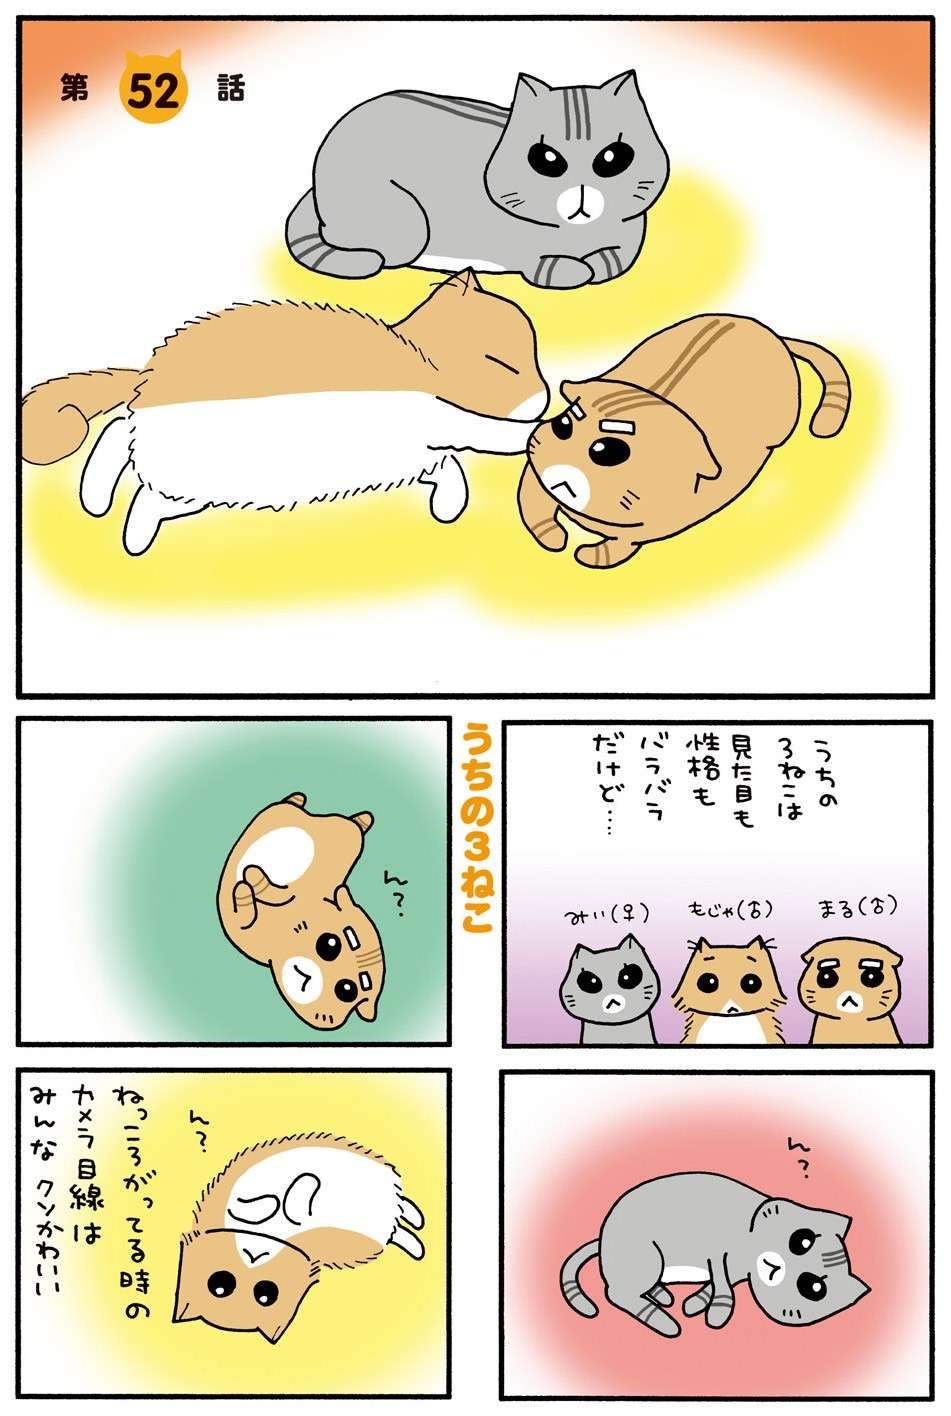 警戒心が強い愛猫。新しいおやつをあげてみたら...怖がっている場合じゃない!? ／うちの3ねこ 3 uchinosanneko3_025.jpg